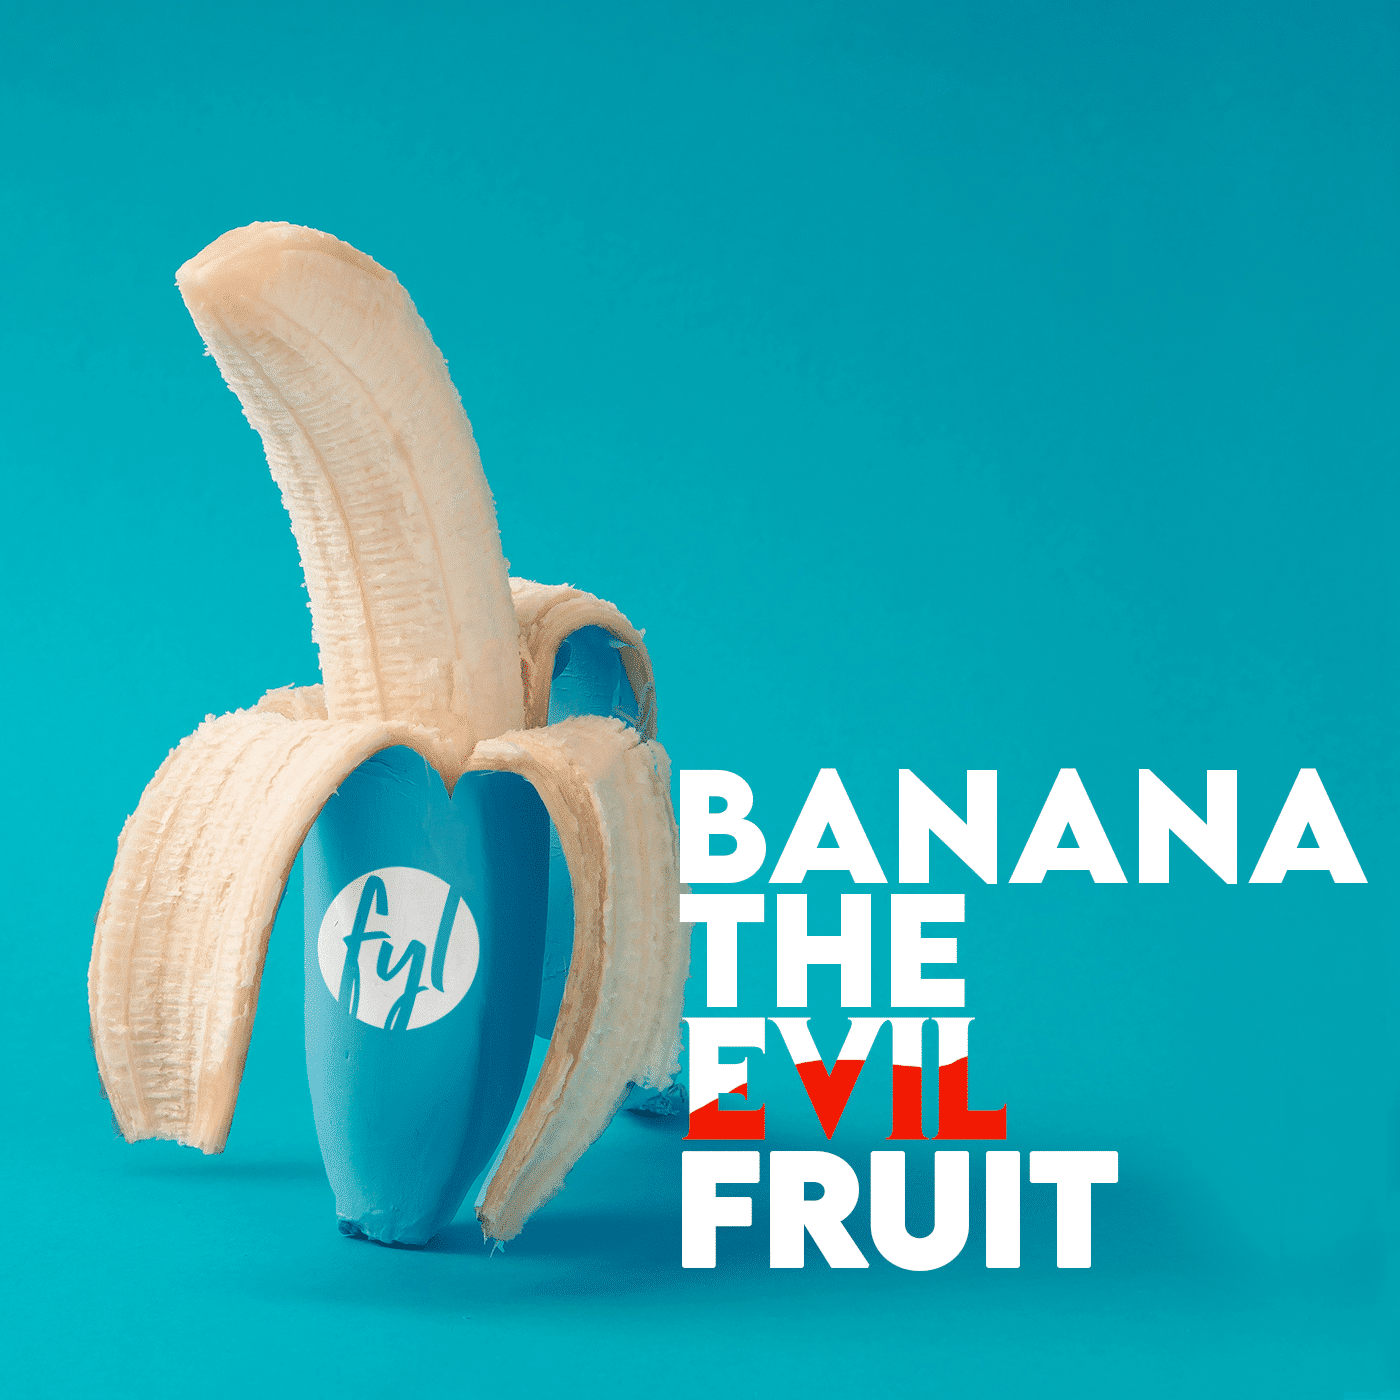 Banana – The ‘Evil’ Fruit?